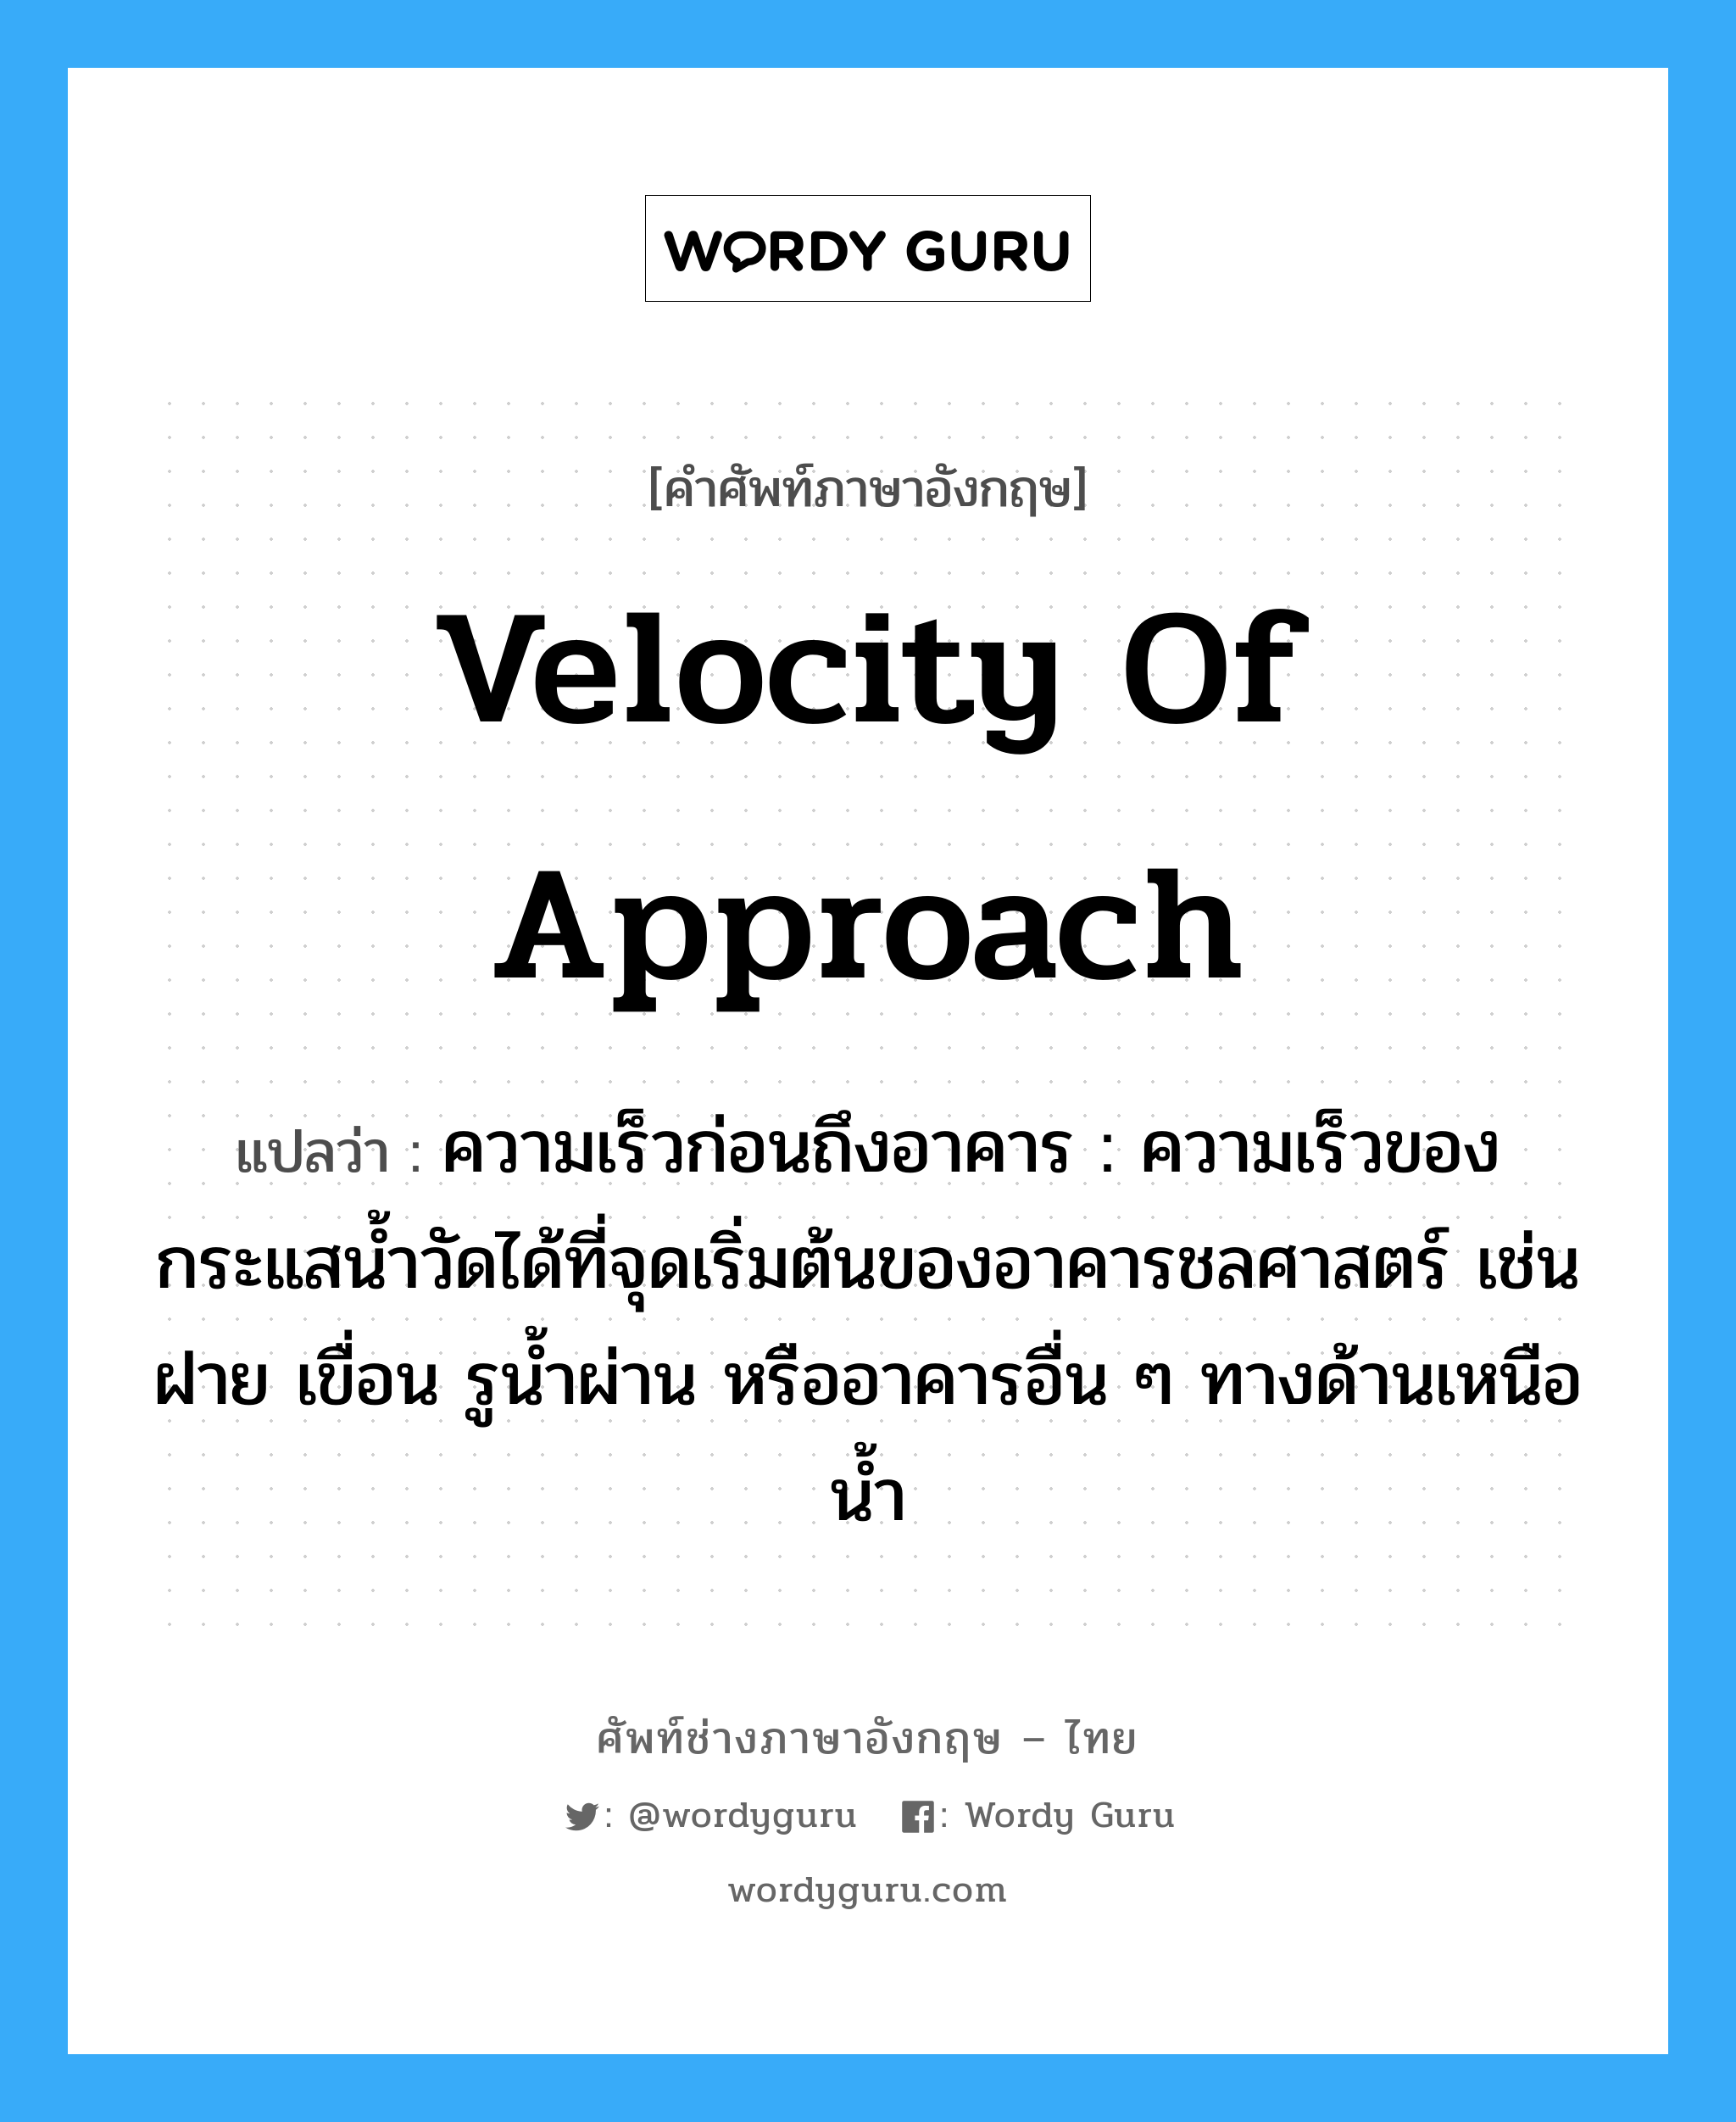 velocity of approach แปลว่า?, คำศัพท์ช่างภาษาอังกฤษ - ไทย velocity of approach คำศัพท์ภาษาอังกฤษ velocity of approach แปลว่า ความเร็วก่อนถึงอาคาร : ความเร็วของกระแสน้ำวัดได้ที่จุดเริ่มต้นของอาคารชลศาสตร์ เช่น ฝาย เขื่อน รูน้ำผ่าน หรืออาคารอื่น ๆ ทางด้านเหนือน้ำ